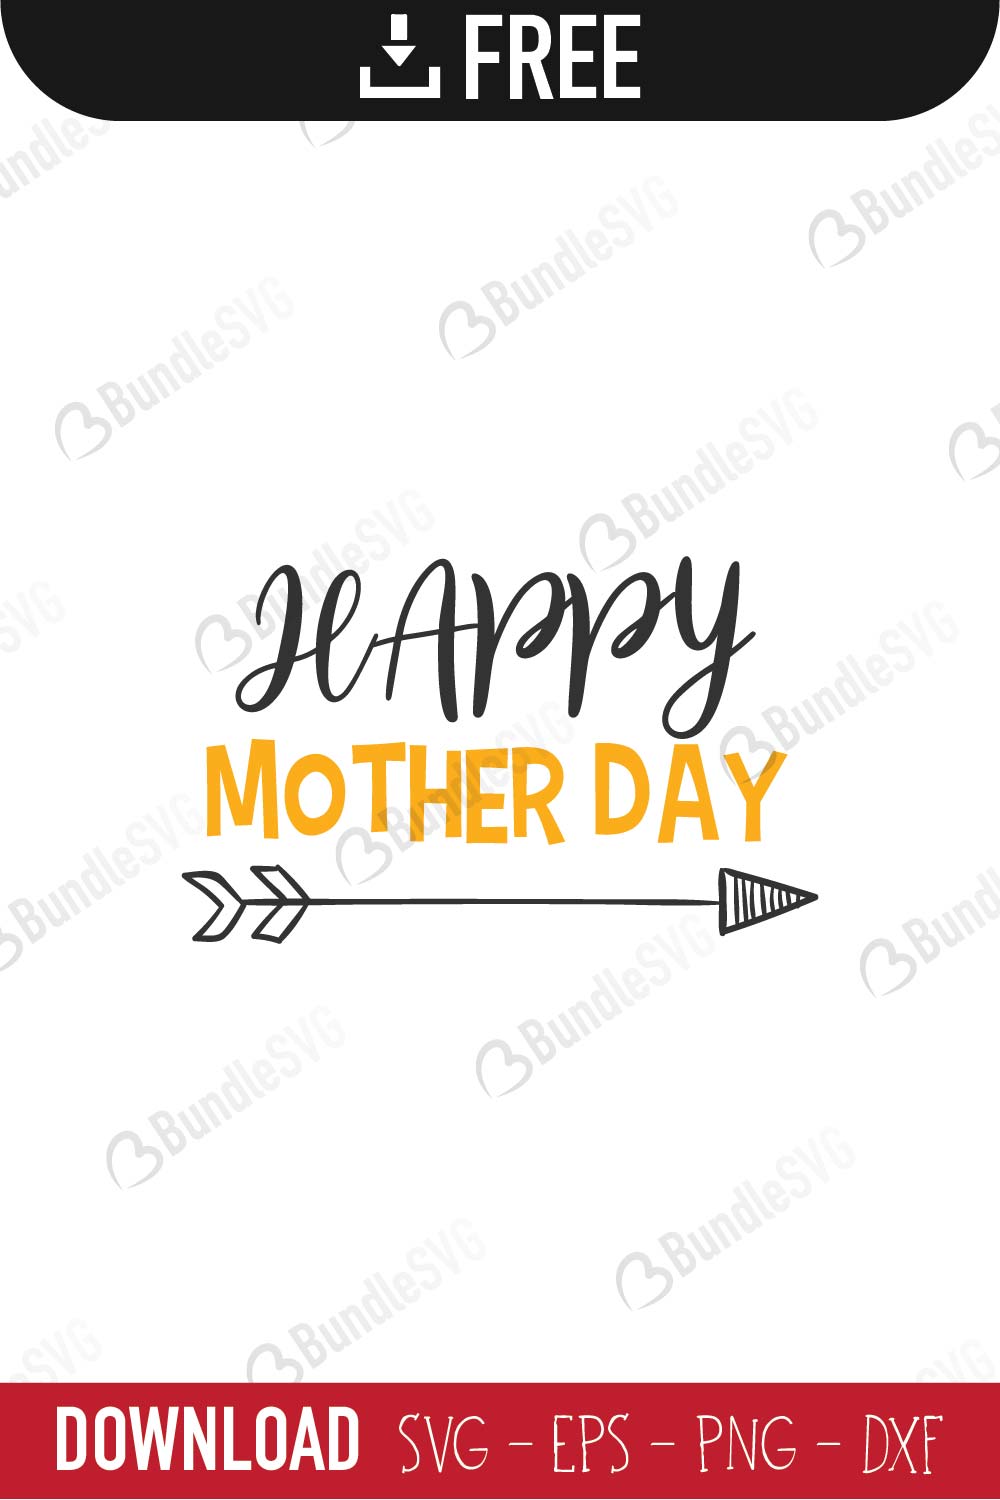 Download Mother Day SVG Cut Files Free Download | BundleSVG.com